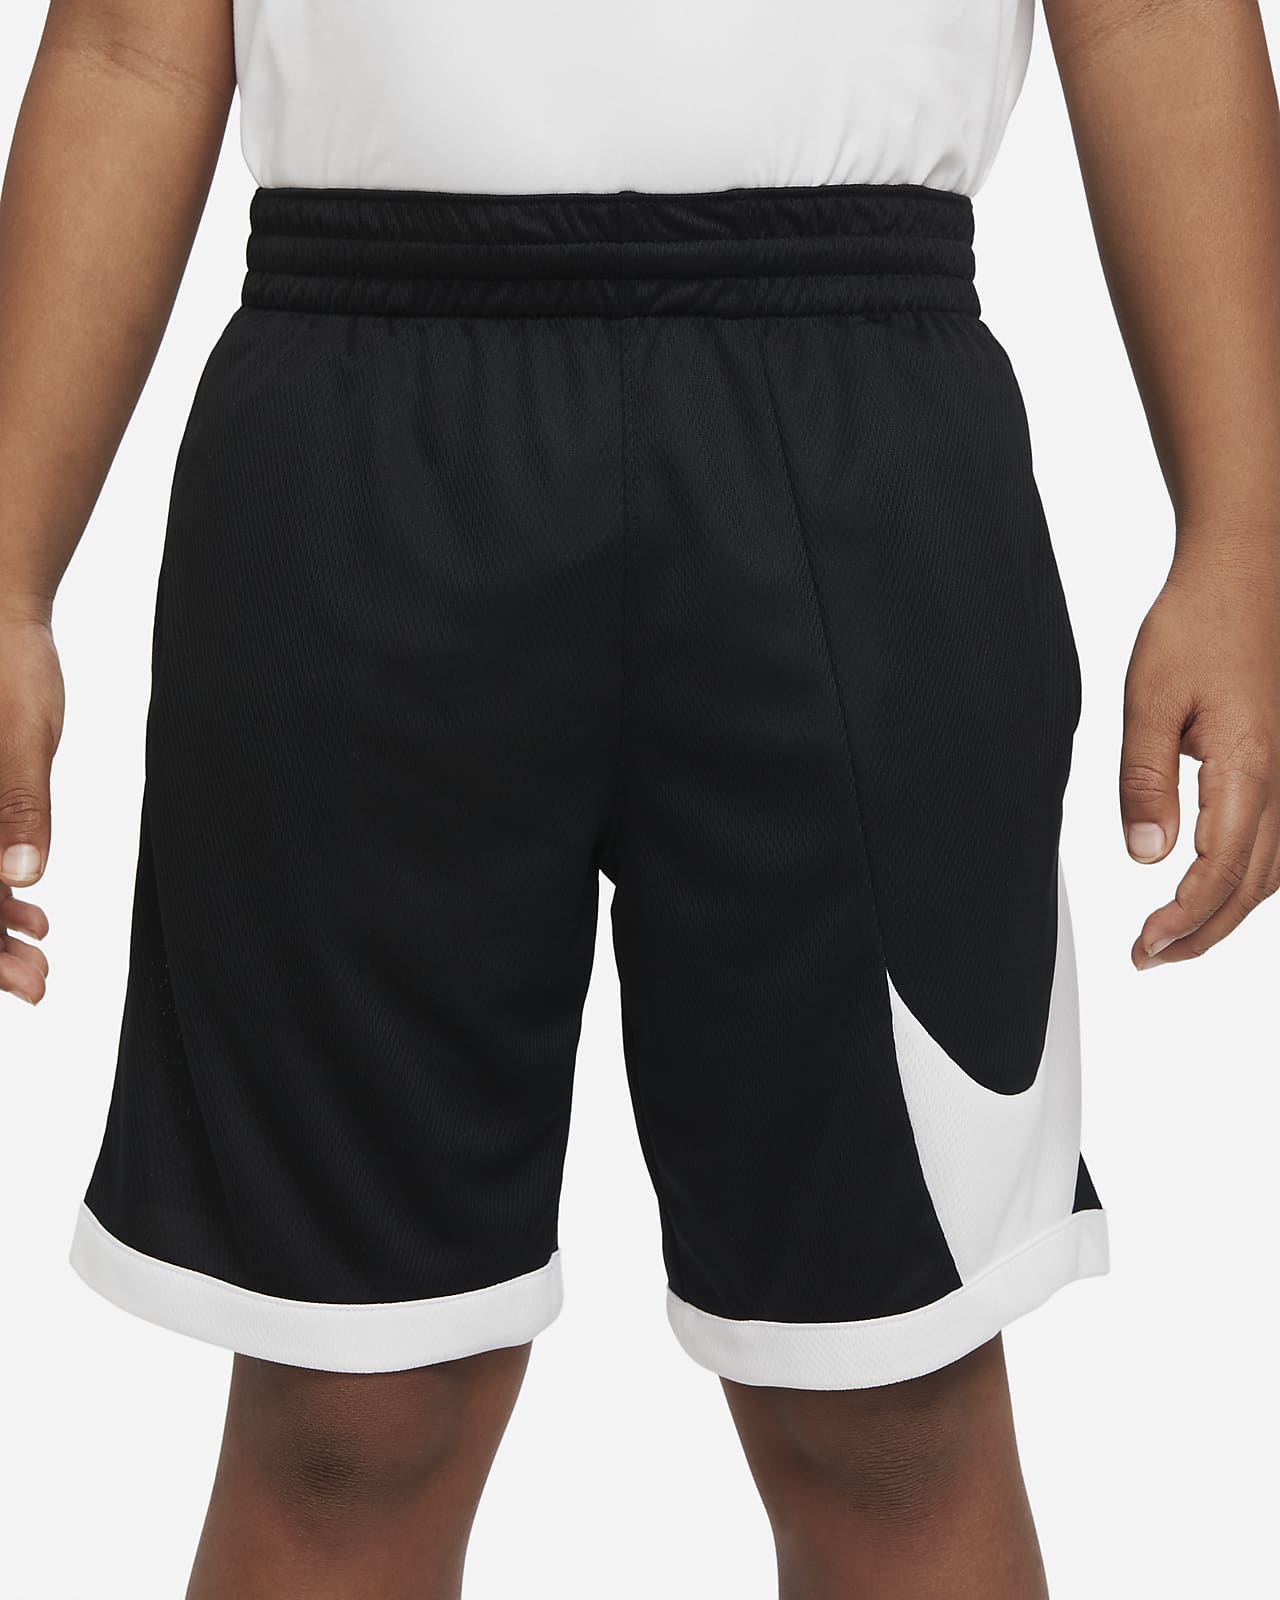 laberinto hospital recuerda Nike Dri-FIT Pantalón corto de baloncesto - Niño. Nike ES